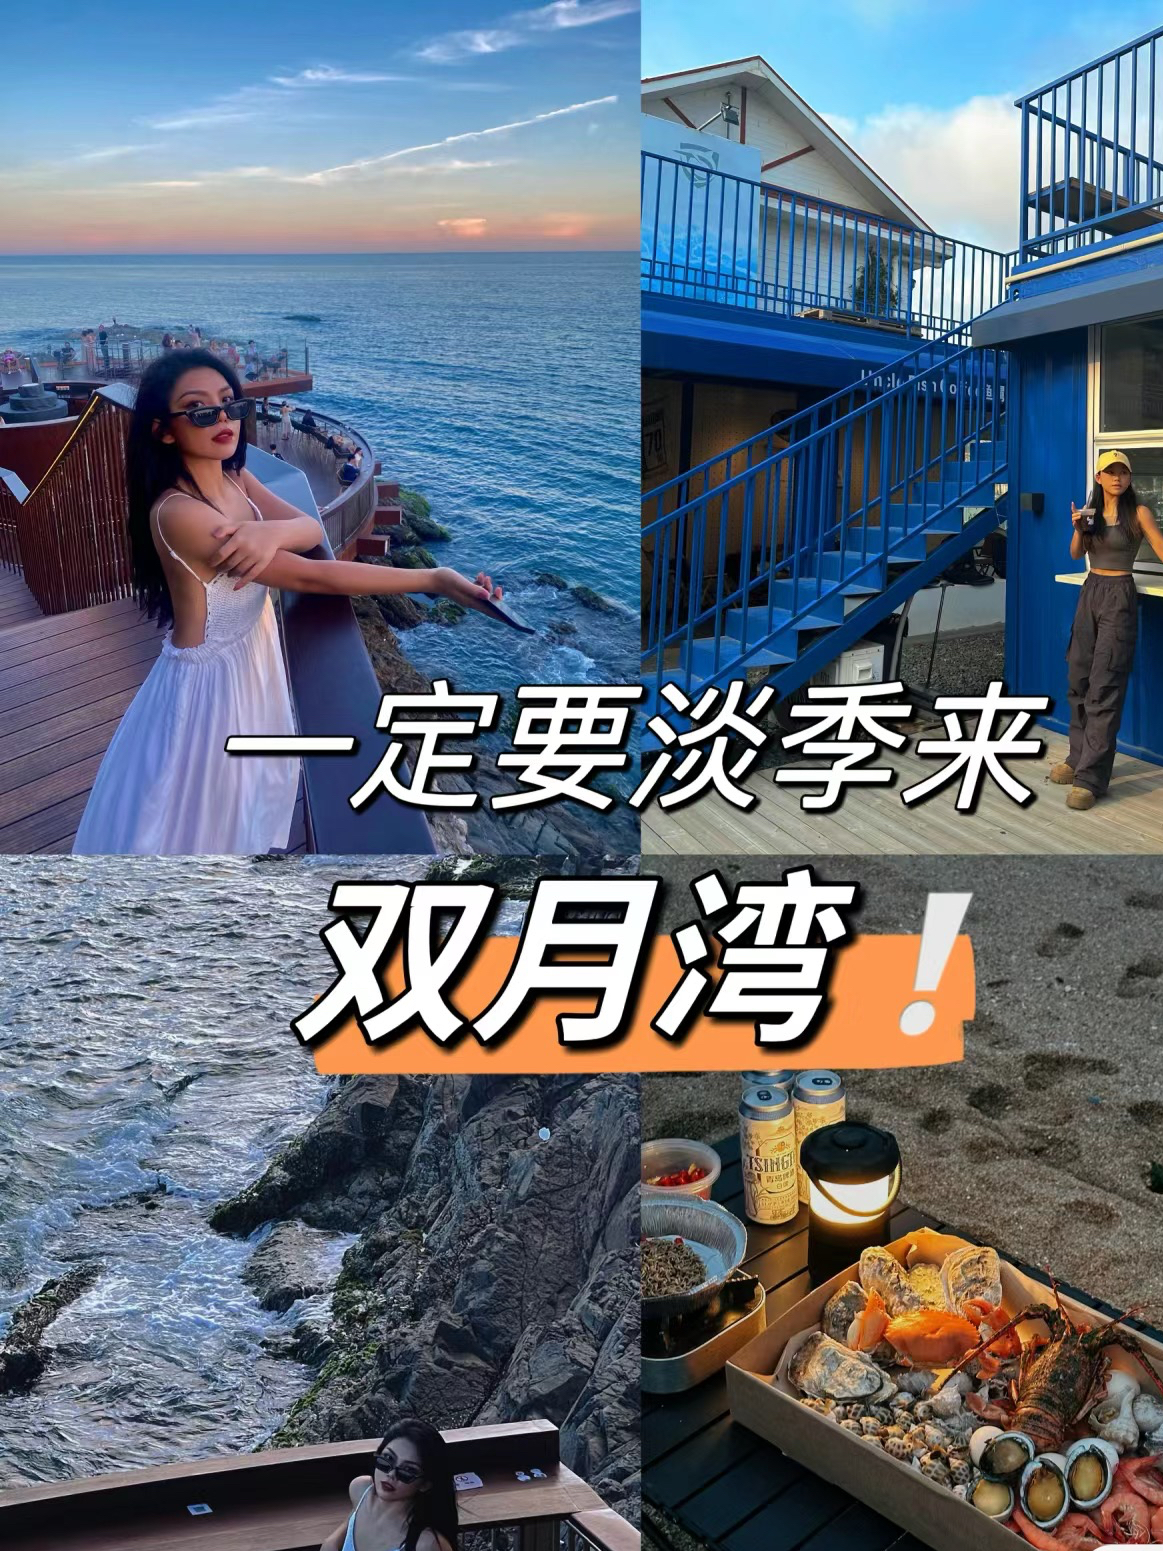 淡季的双月湾美到不像话!!超低物价游玩攻略 淡季来惠州真的太超值啦!双月湾真是个海边度假胜地，只有暑